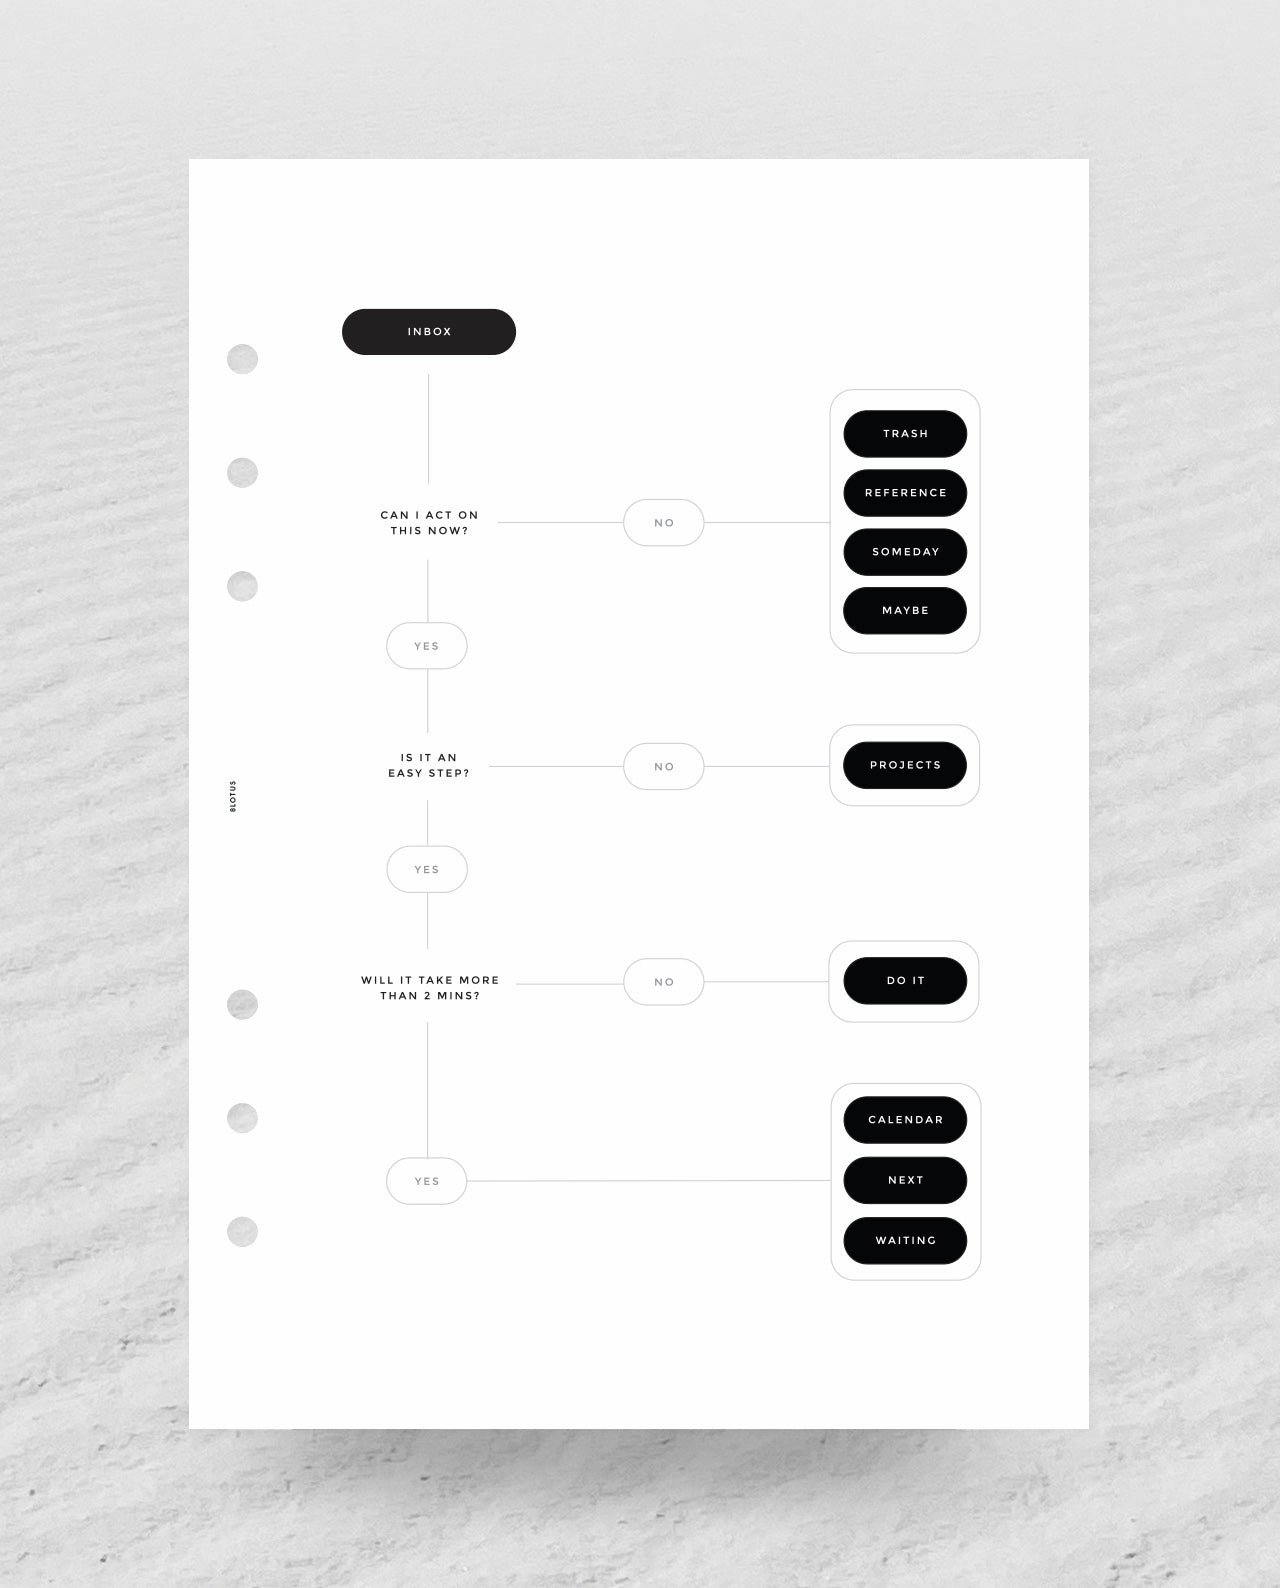 D035 - Inbox GTD Infographic - Planner Dashboard